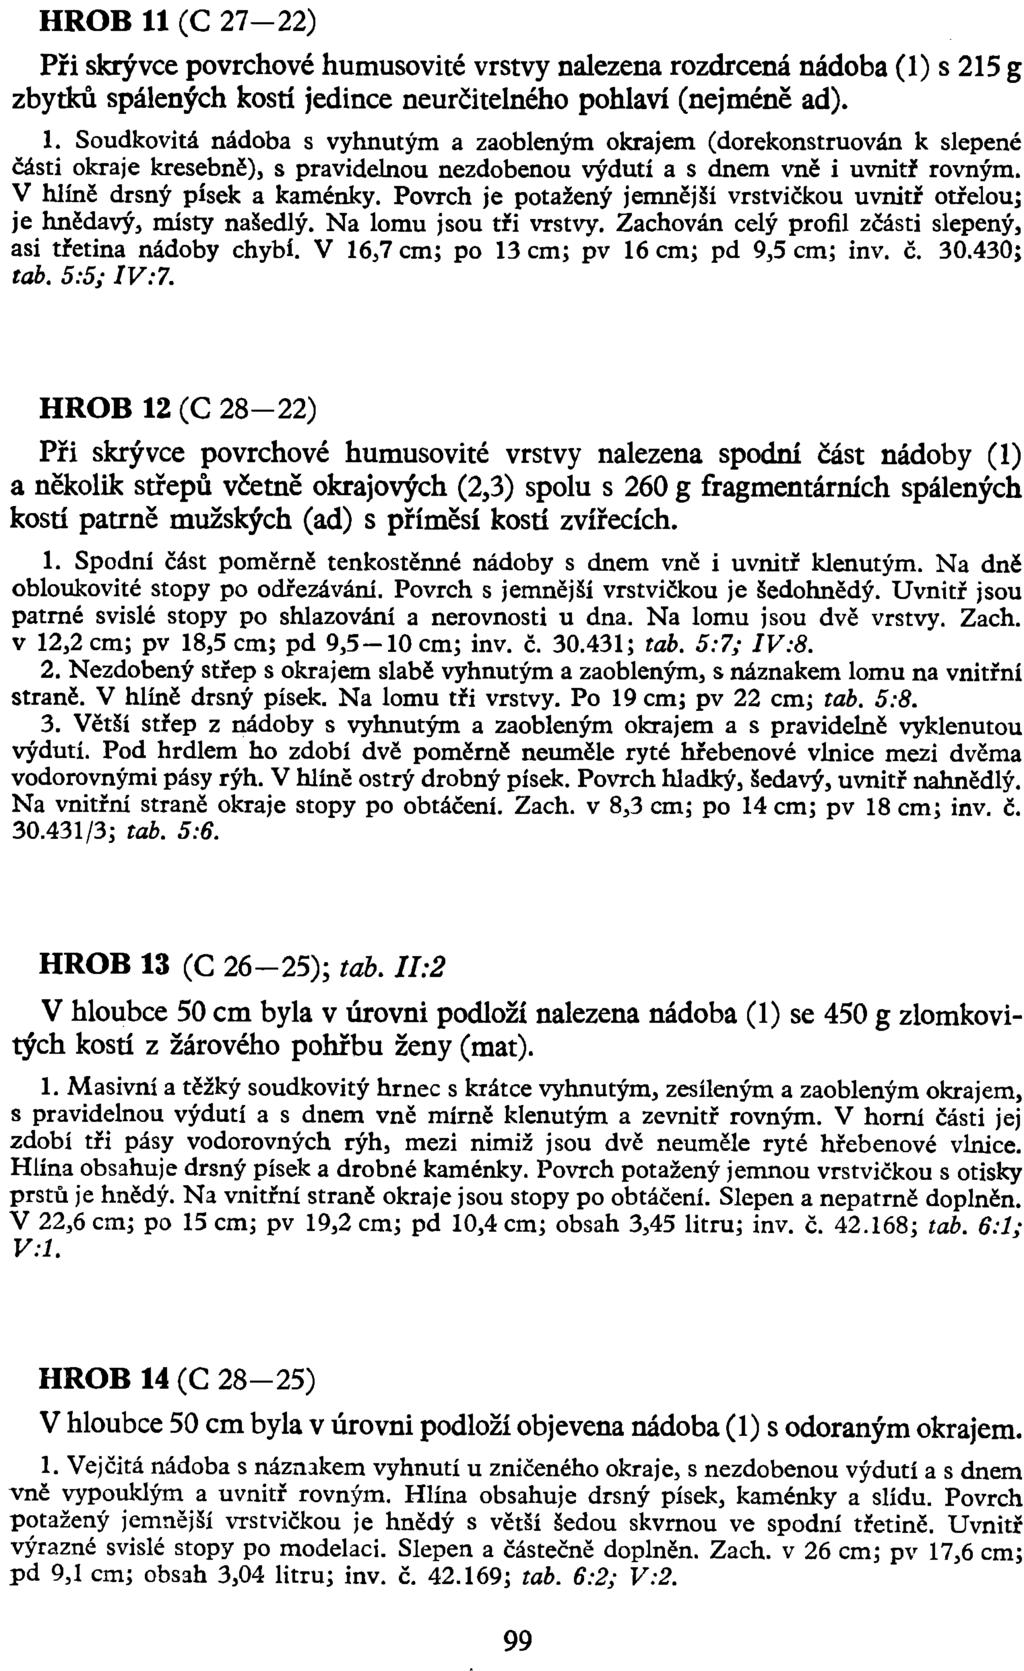 HROB 11 (C 27-22) Při skrývce povrchové humusovité vrstvy nalezena rozdrcená nádoba (1) s 215 g zbytků spálených kostí jedince neurčitelného pohlaví (nejméně ad). 1. Soudkovitá nádoba s vyhnutým a zaobleným okrajem (dorekonstruován k slepené části okraje kresebně), s pravidelnou nezdobenou výdutí a s dnem vně i uvniti' rovným.